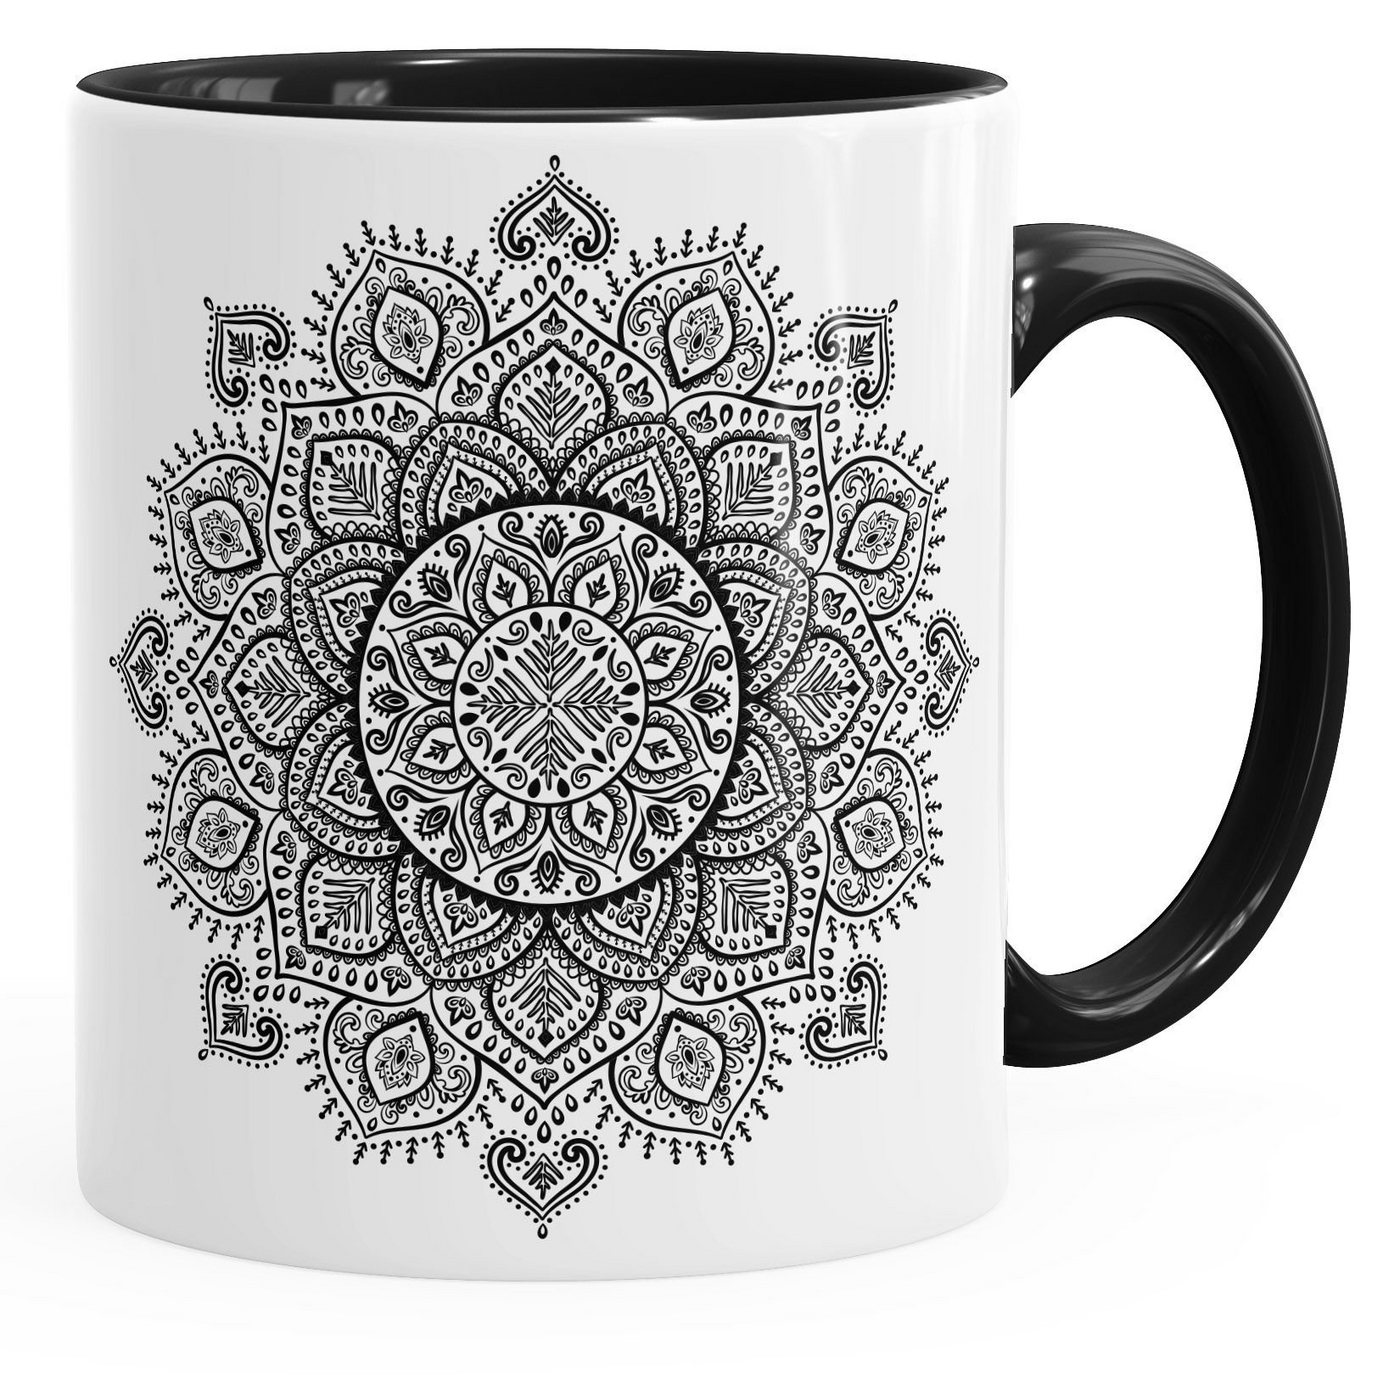 Autiga Tasse Kaffee-Tasse Mandala Ethno Boho Kaffeetasse Teetasse Keramiktasse mit Innenfarbe Autiga®, Keramik von Autiga